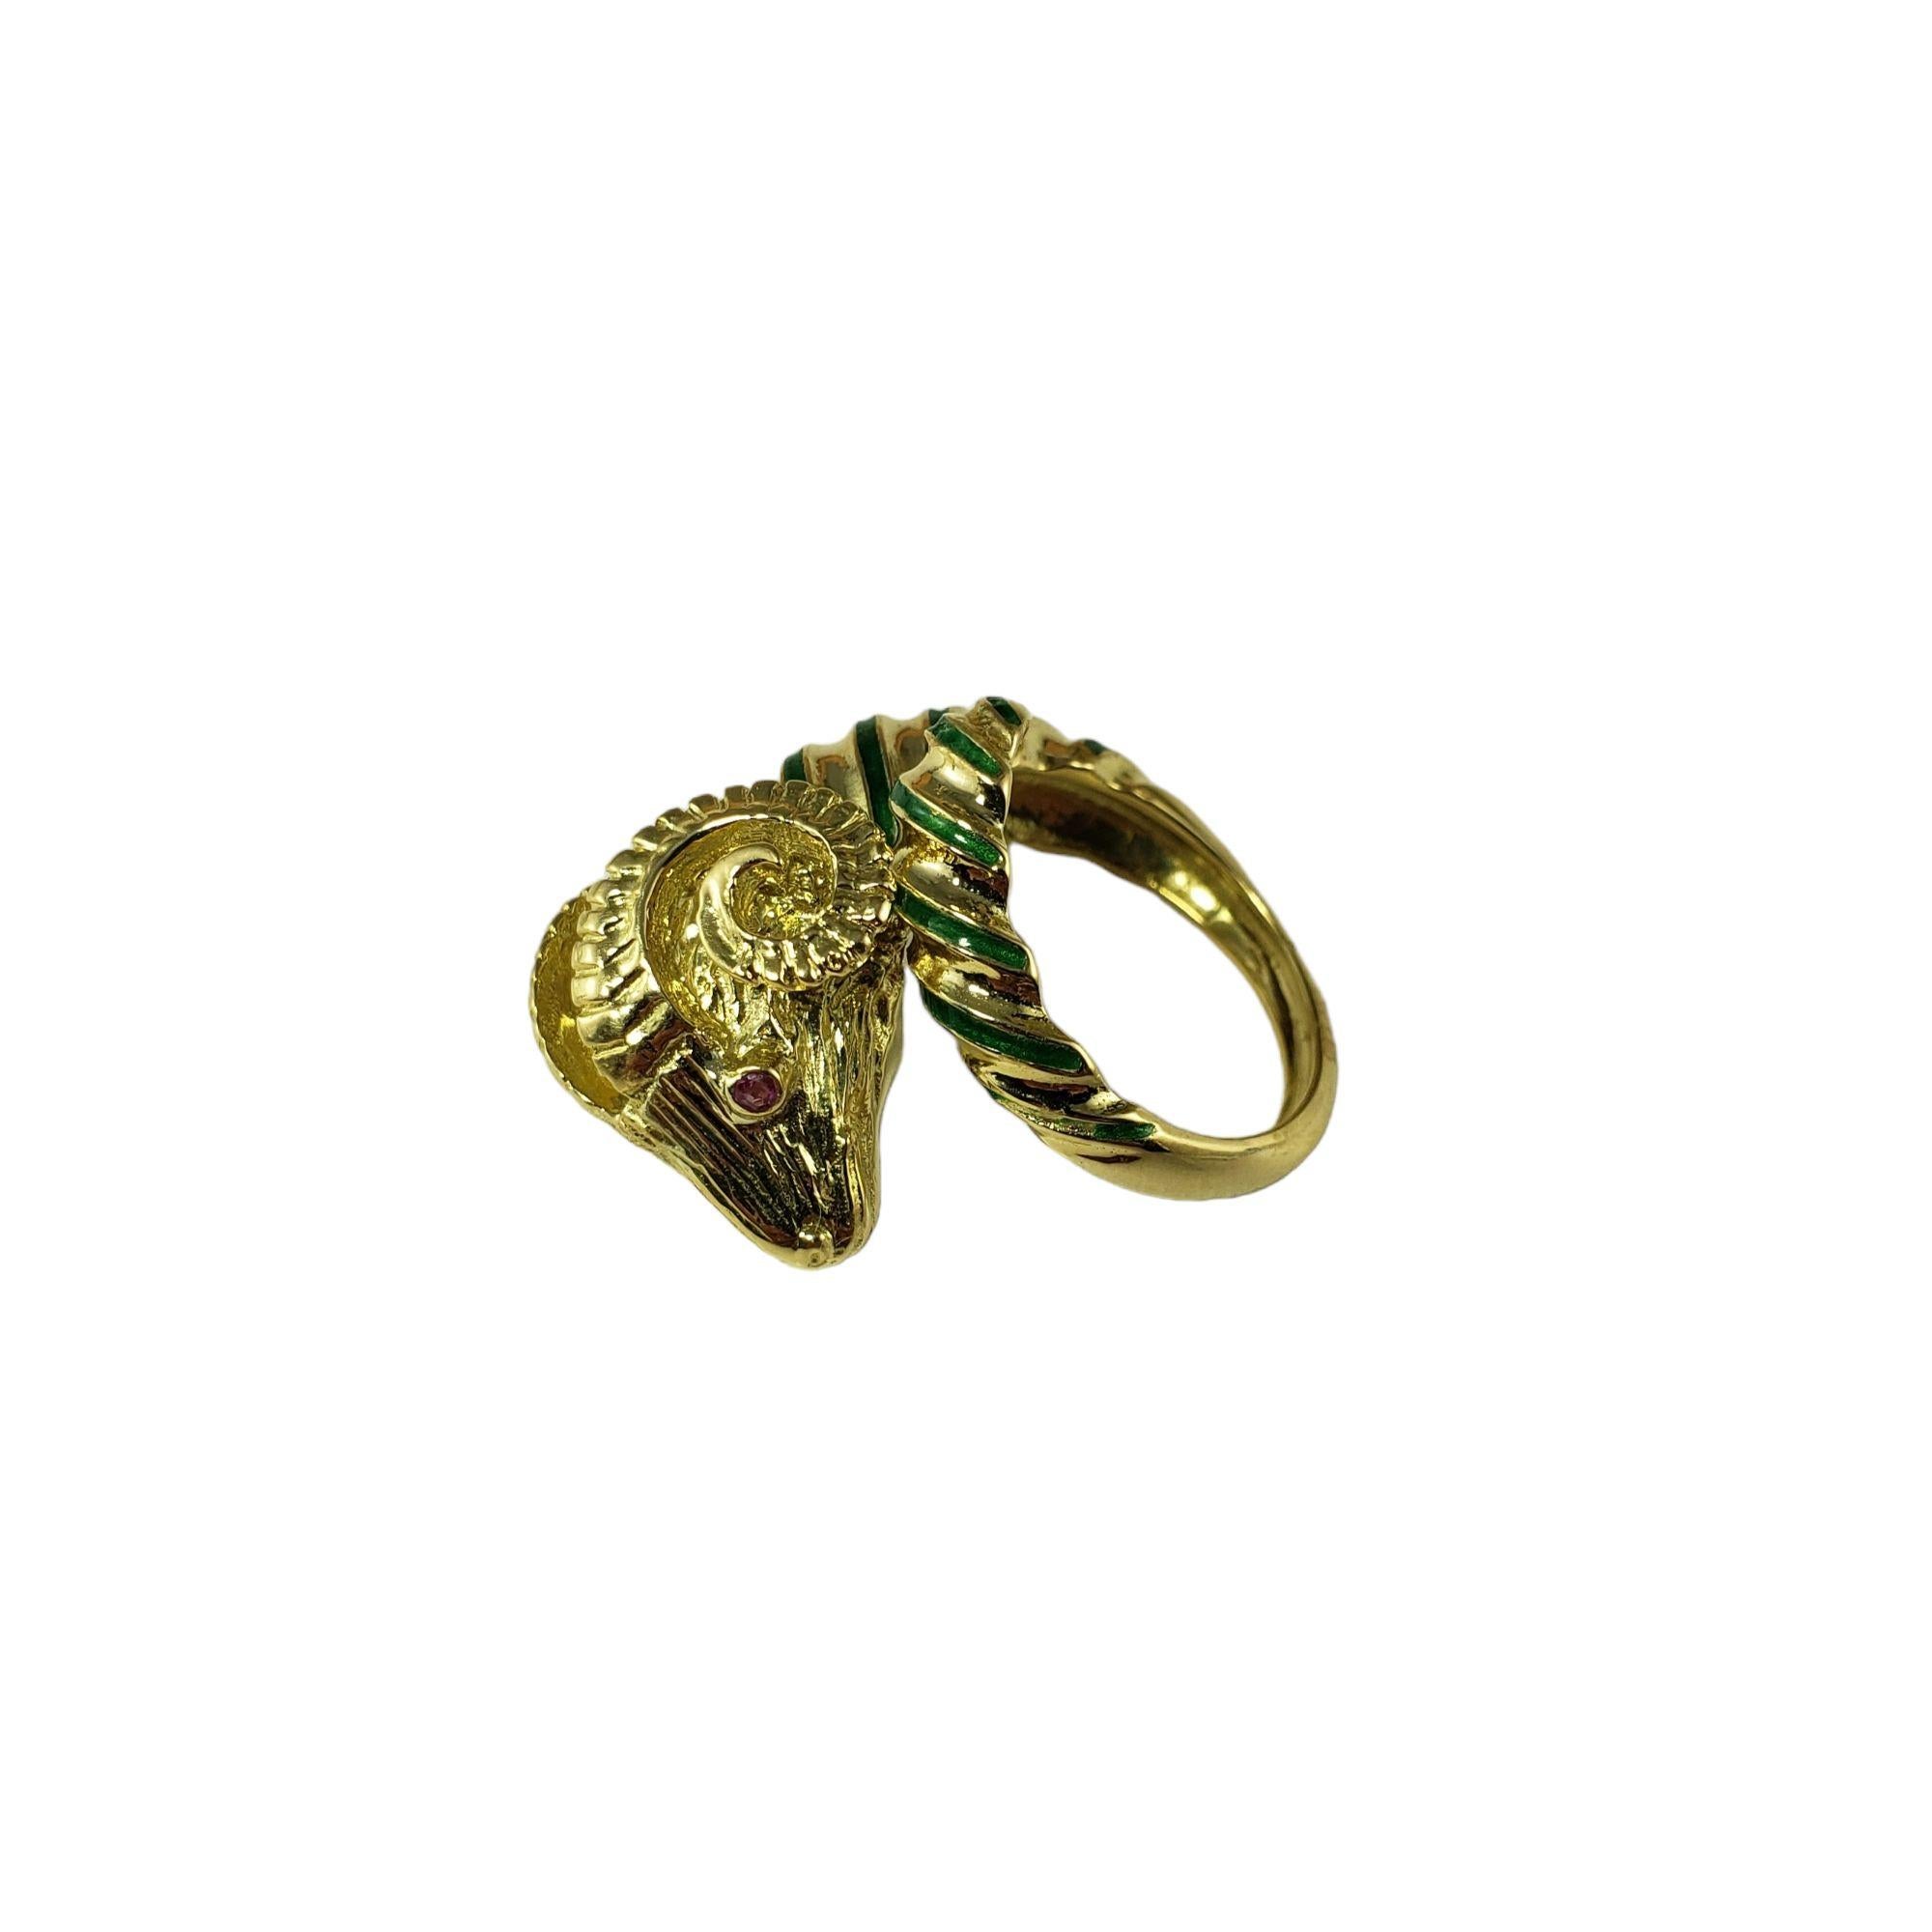  18 Karat Yellow Gold Ram Ring Size 7 #14931 1